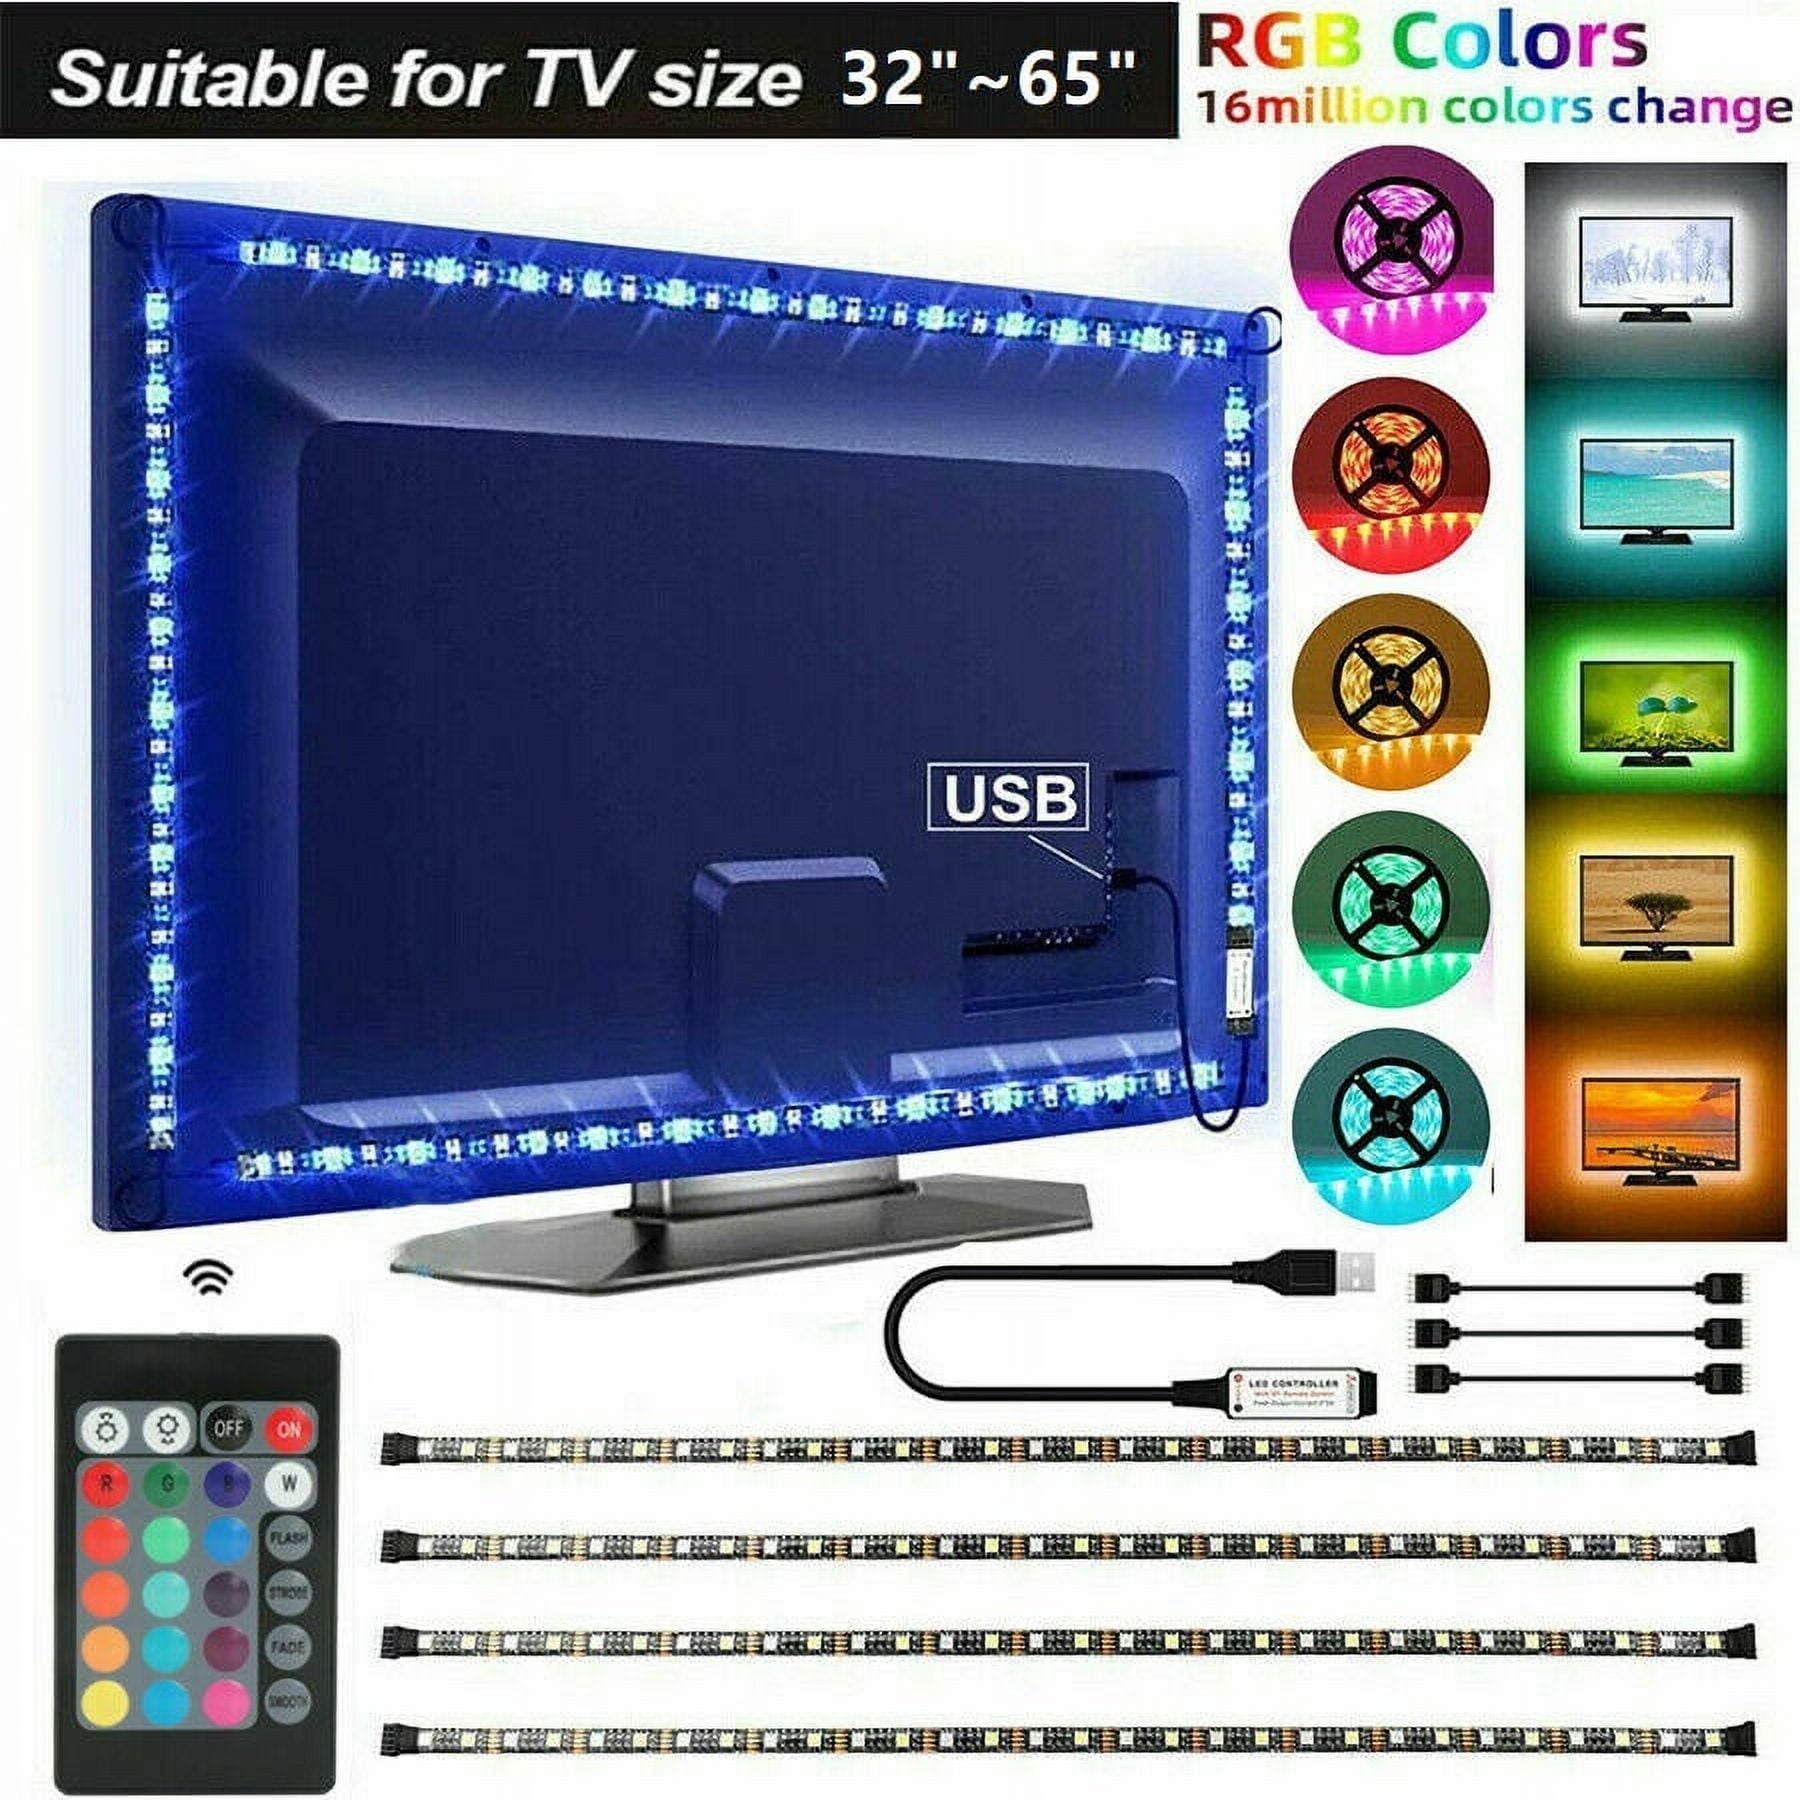  USB LED Lighting Strip for HDTV - Medium (78in / 2m) -  Multi-Color RGB - USB LED Backlight Strip with Dimmer for Bias Lighting  HDTV, Flat Screen TV LCD, Desktop Monitors